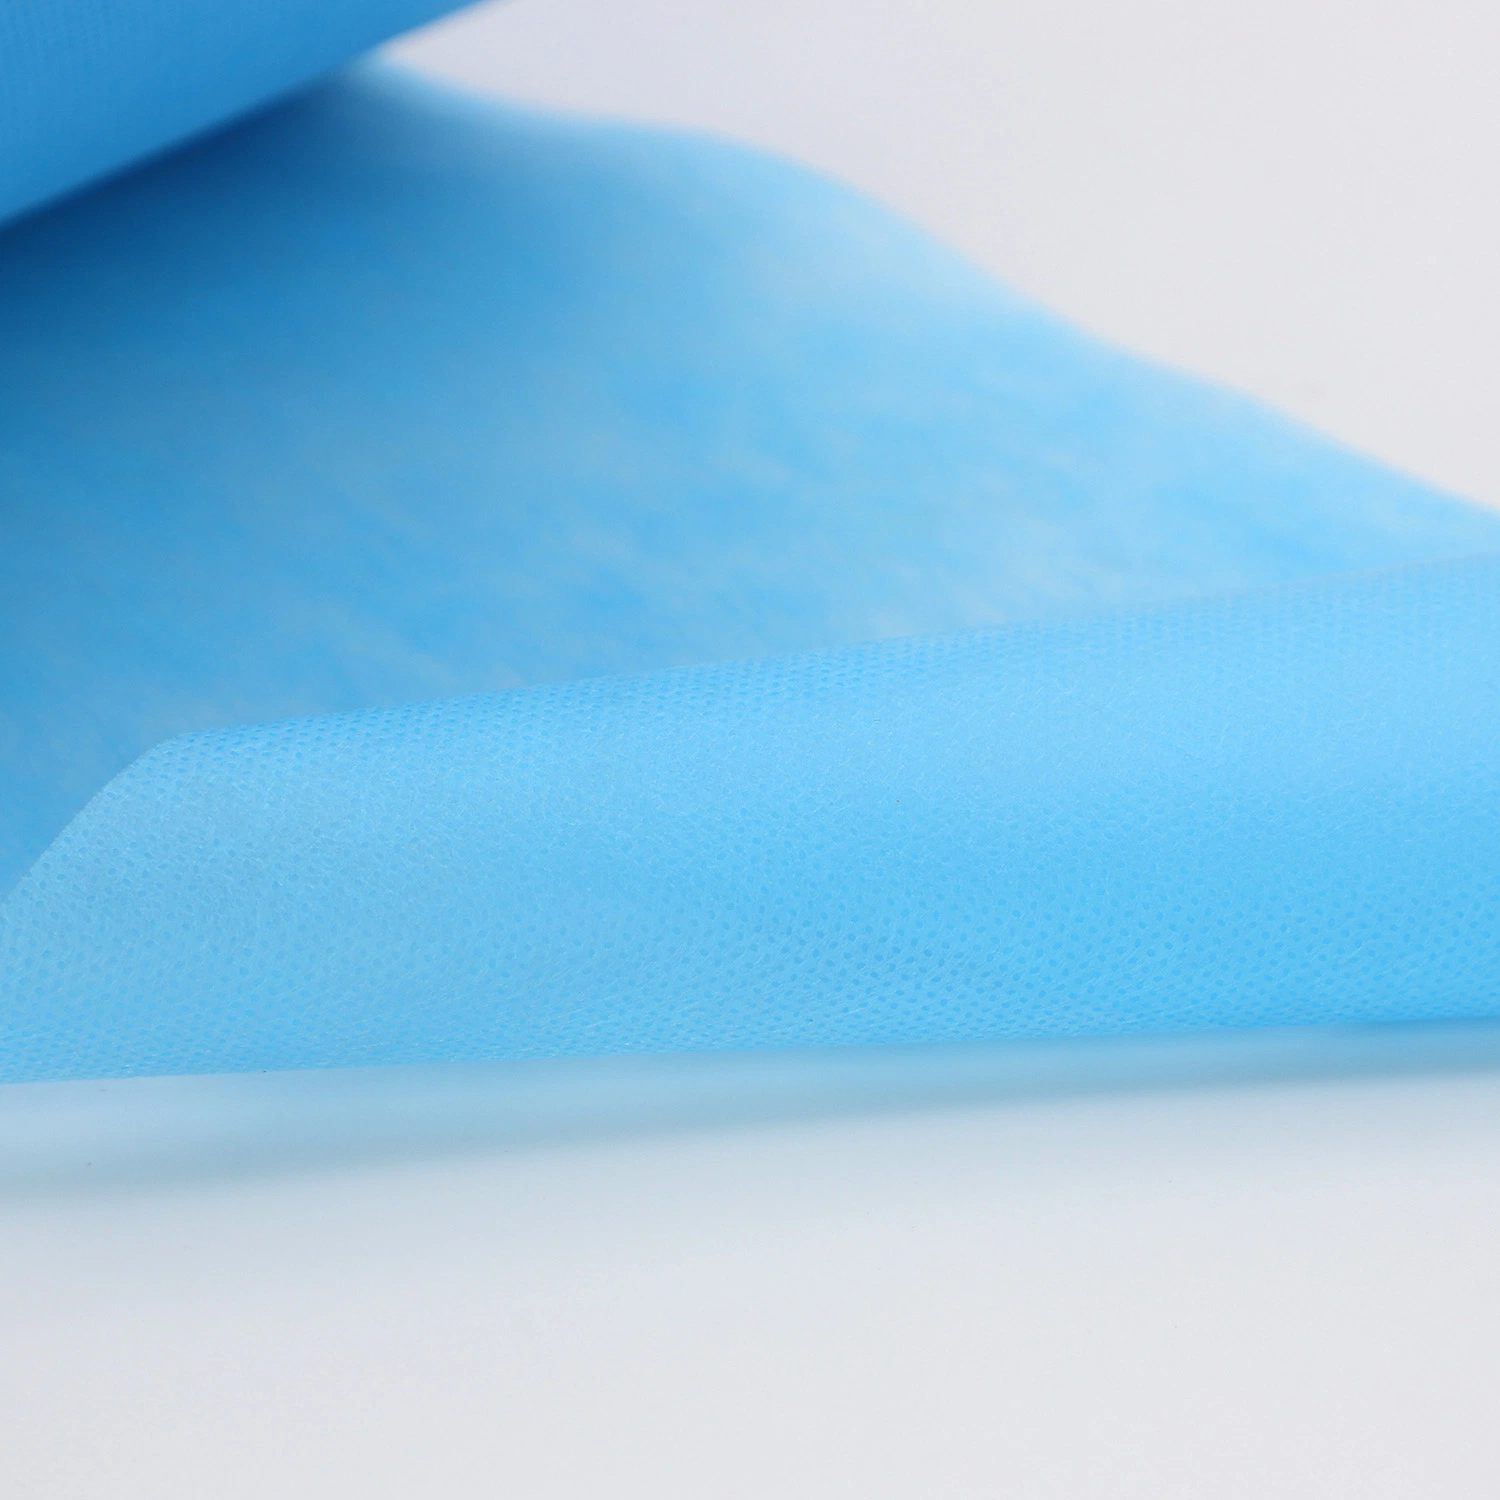 China Manufacturer of 100% Virgin Polypropylene Non Woven Fabric Textiles